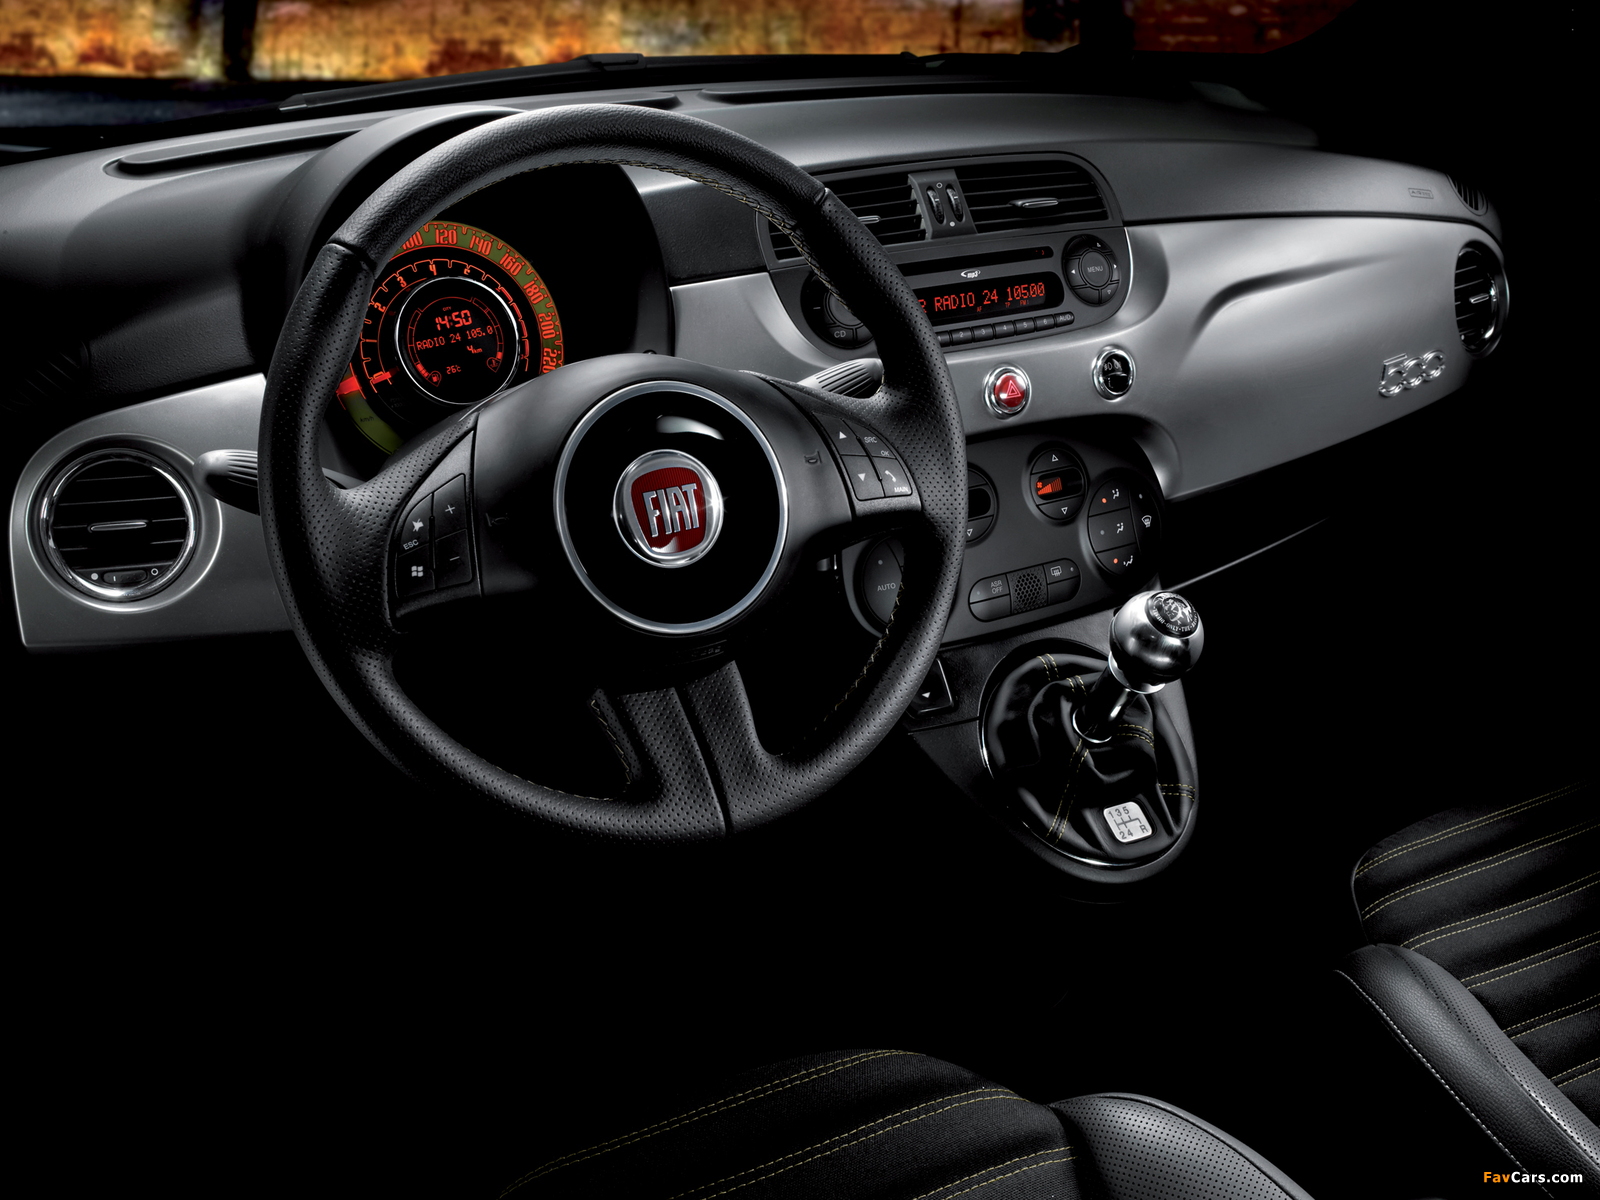  Fiat 500 Diesel Edition собираются для одноразового аукциона СПИДа 